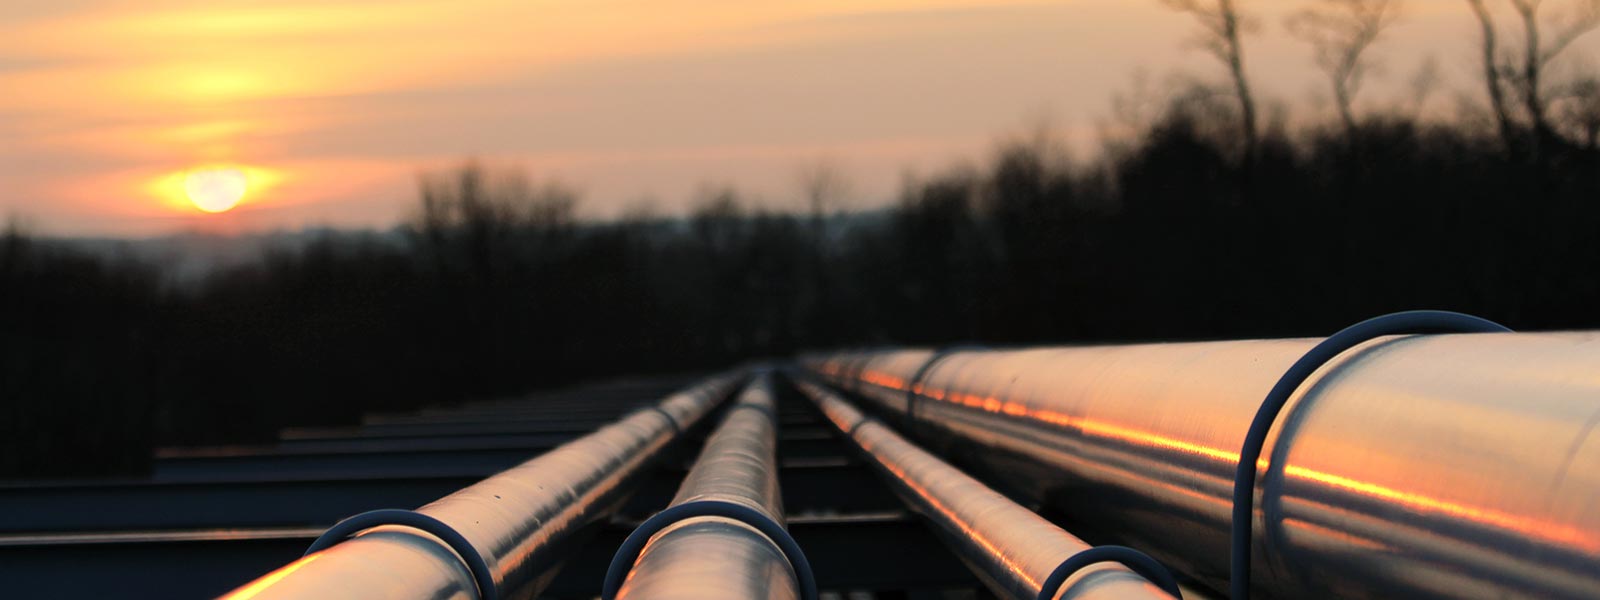 Pipelines & Transportation